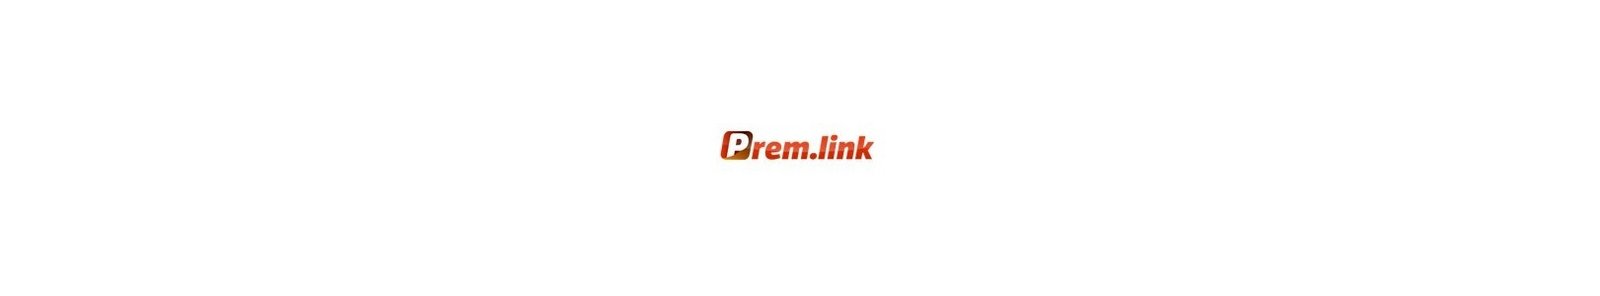 Prem.link Or Rapid8